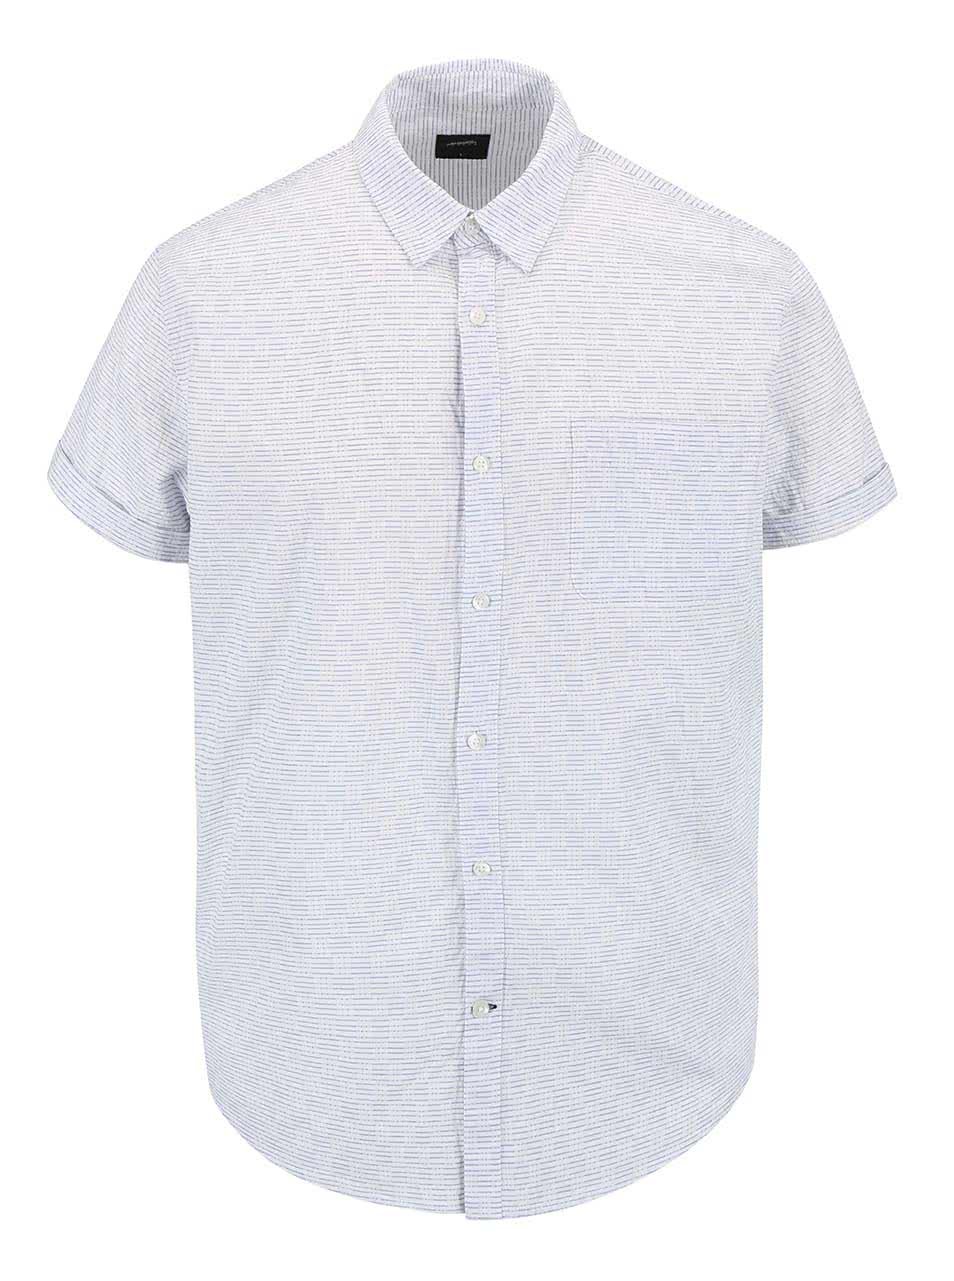 Bílá vzorovaná košile s krátkým rukávem Burton Menswear London